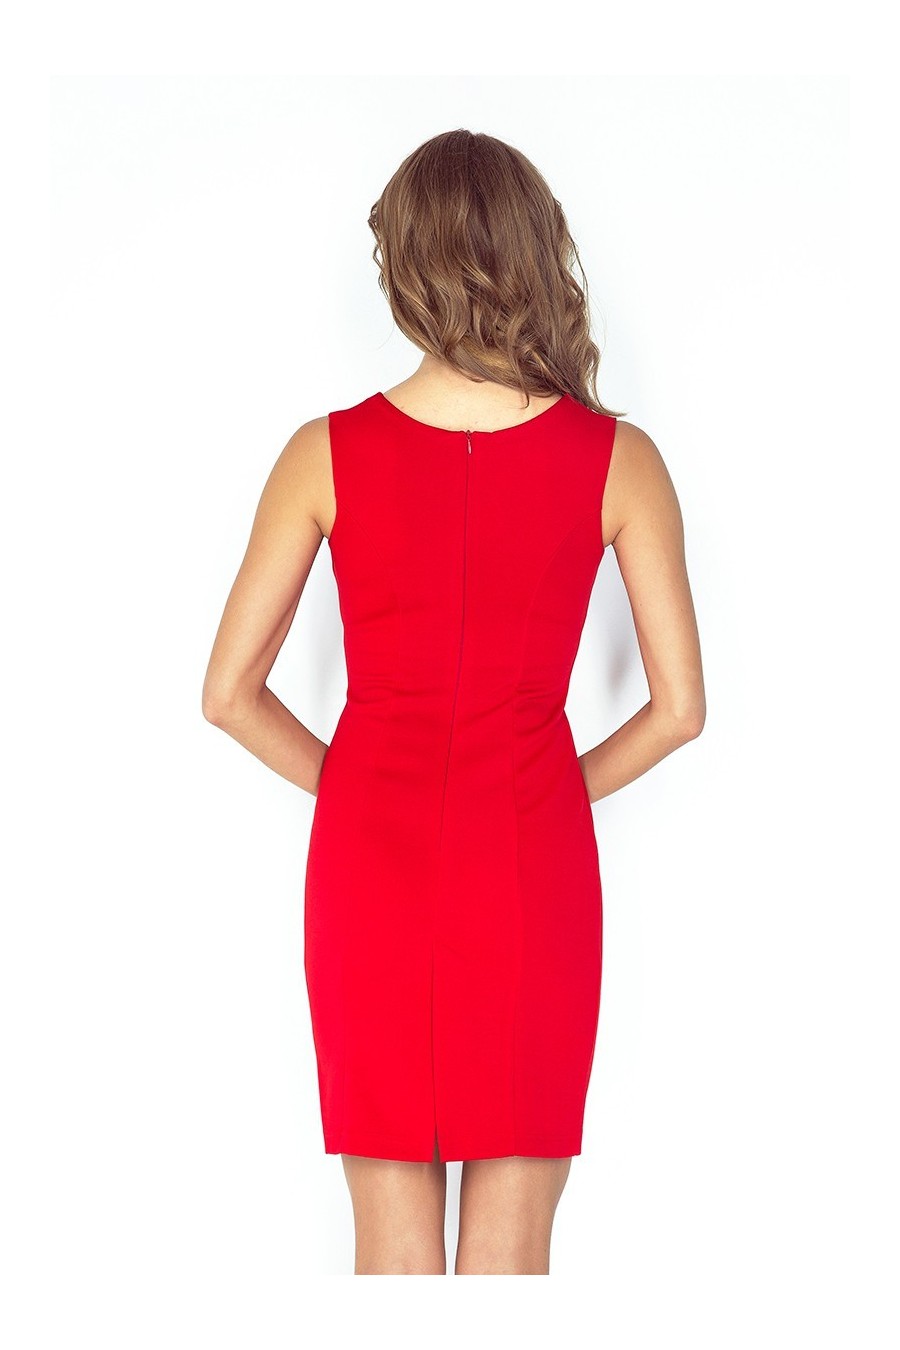 Elegantní šaty s přezkou - cervená MM 005-1